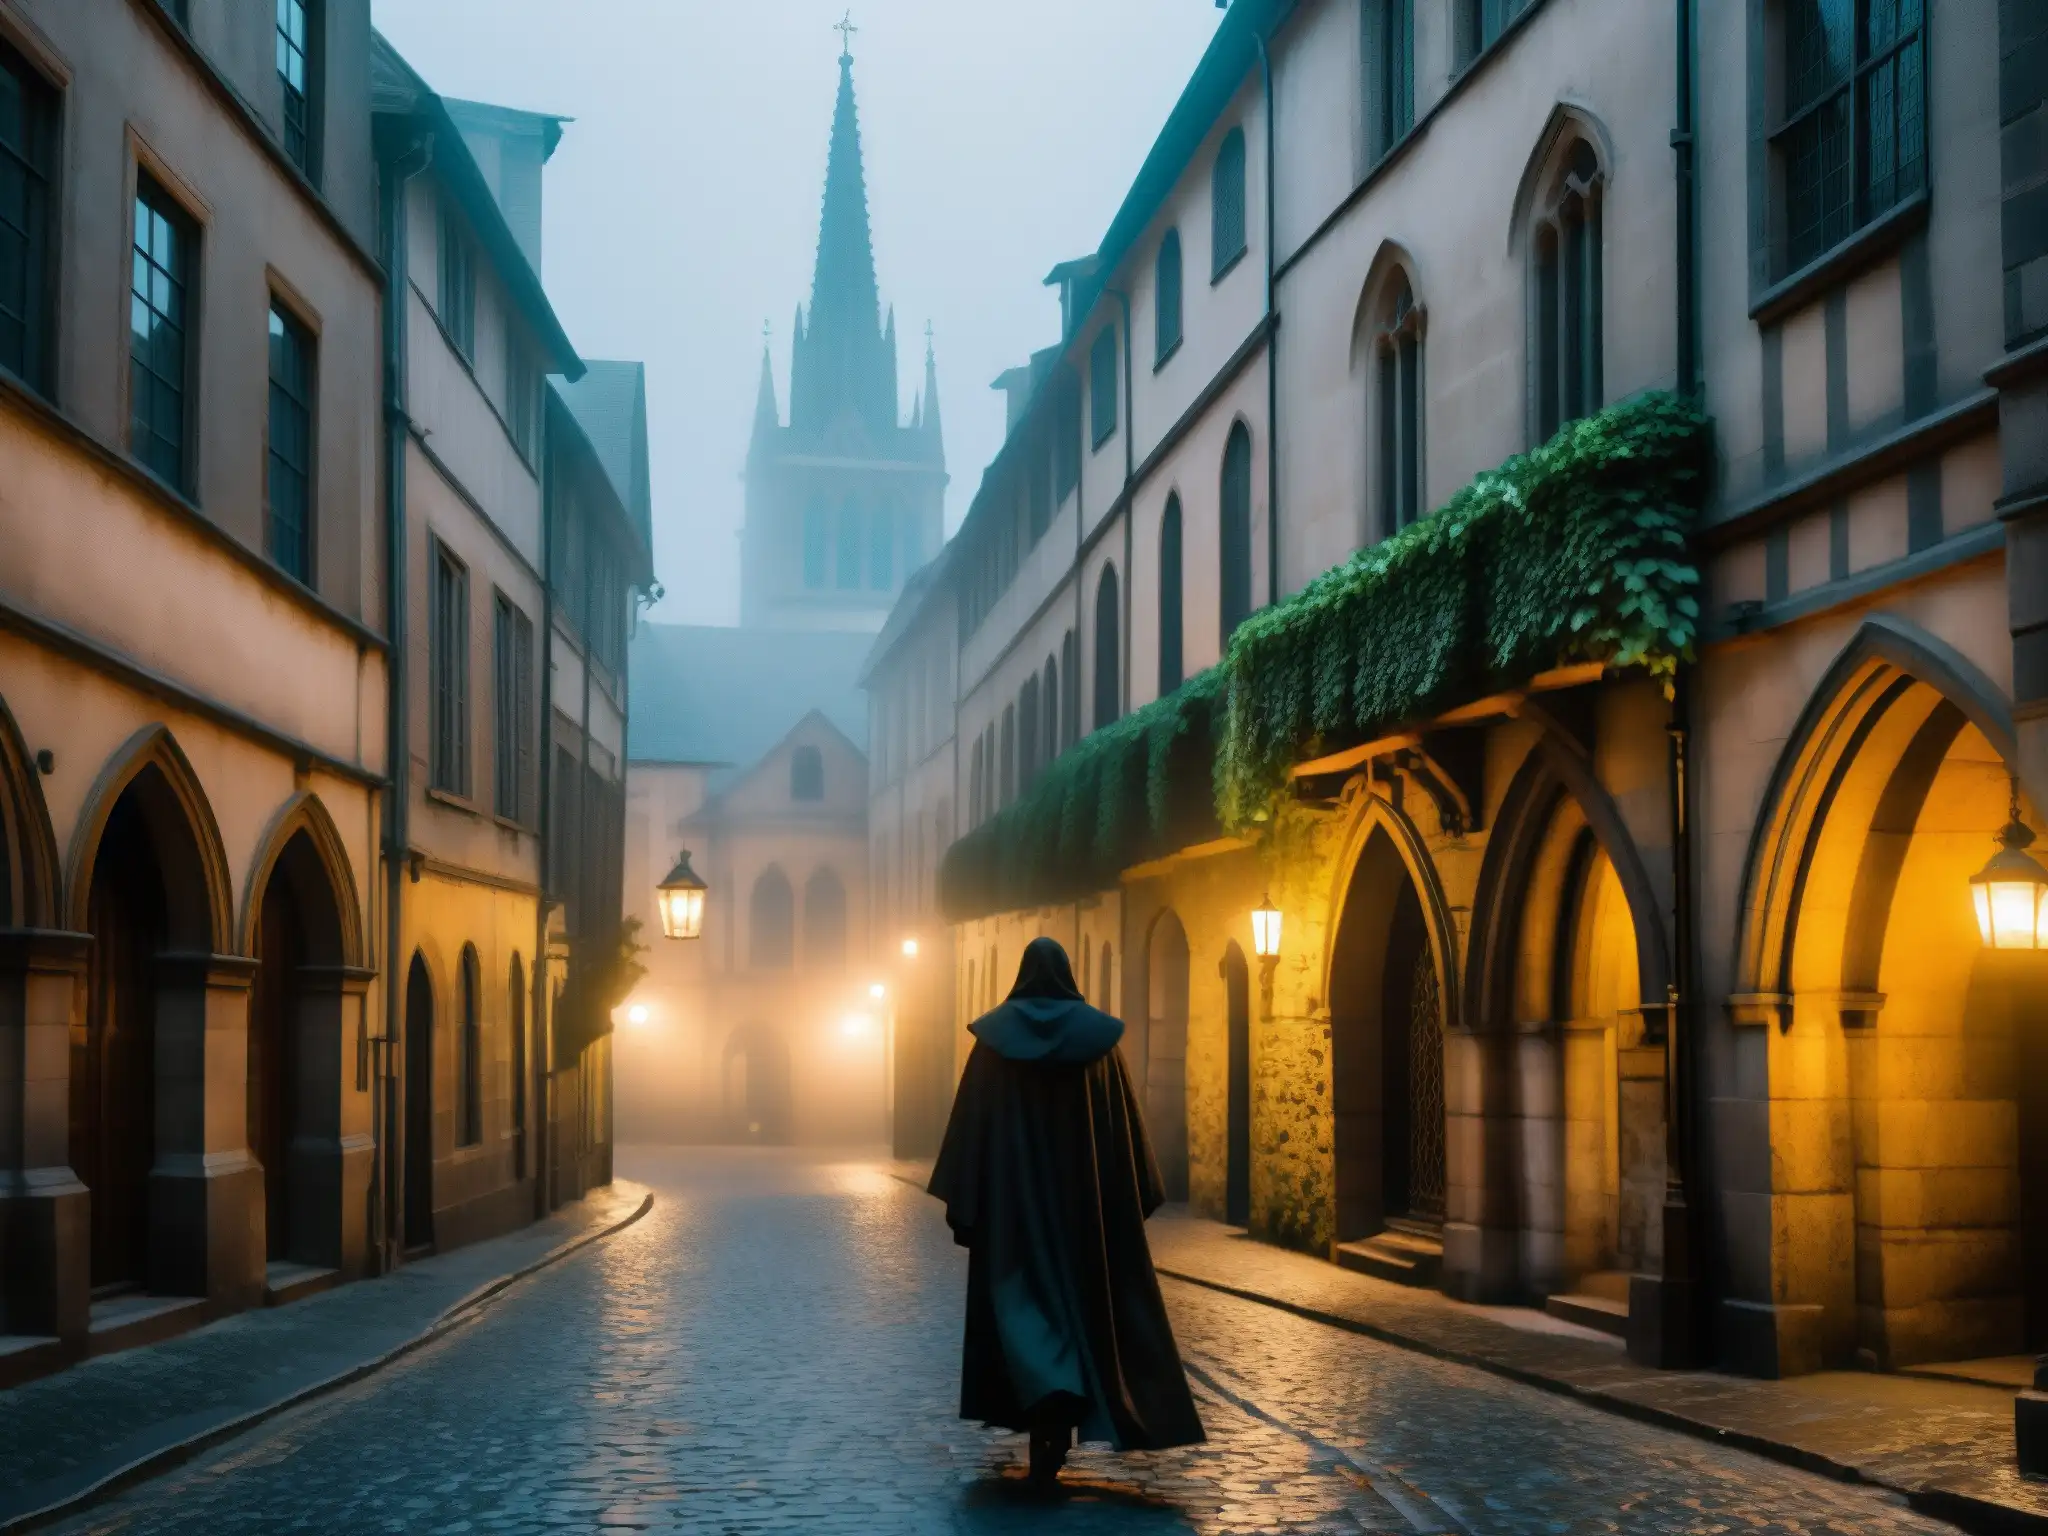 Un callejón tenebroso y misterioso con una catedral gótica de fondo